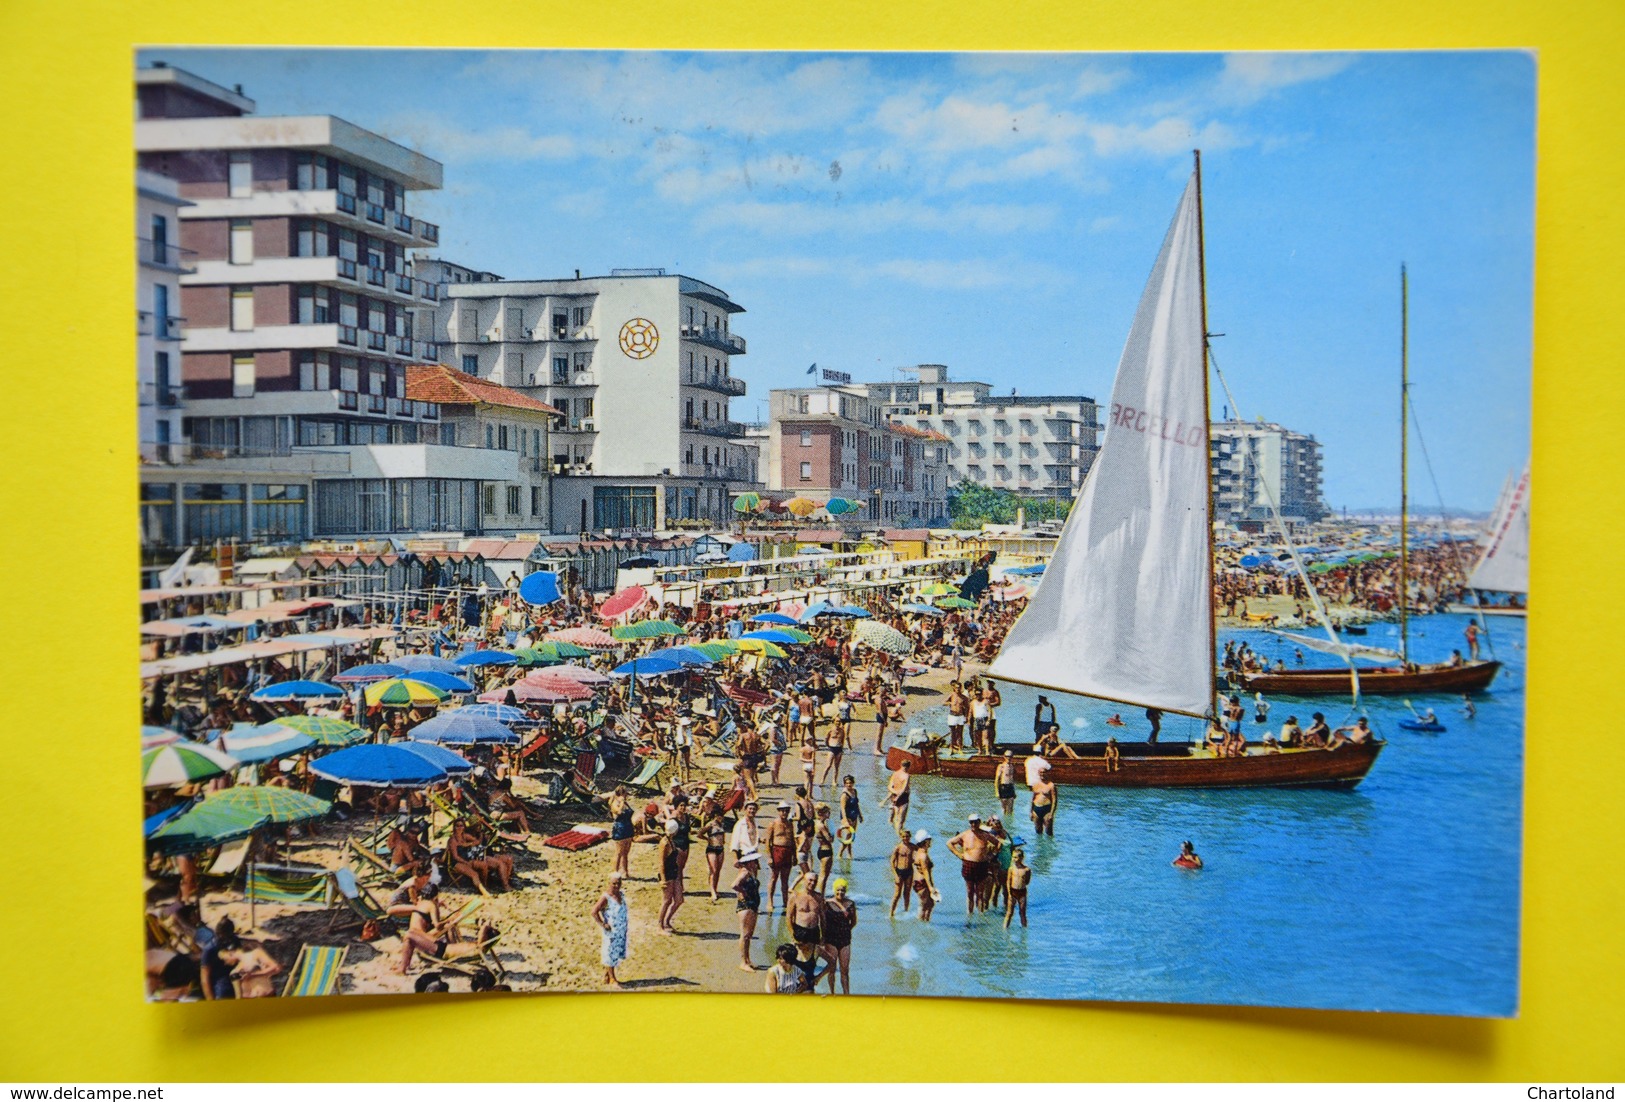 Cartolina Cattolica Grandi Alberghi Spiaggia 1950 - Rimini